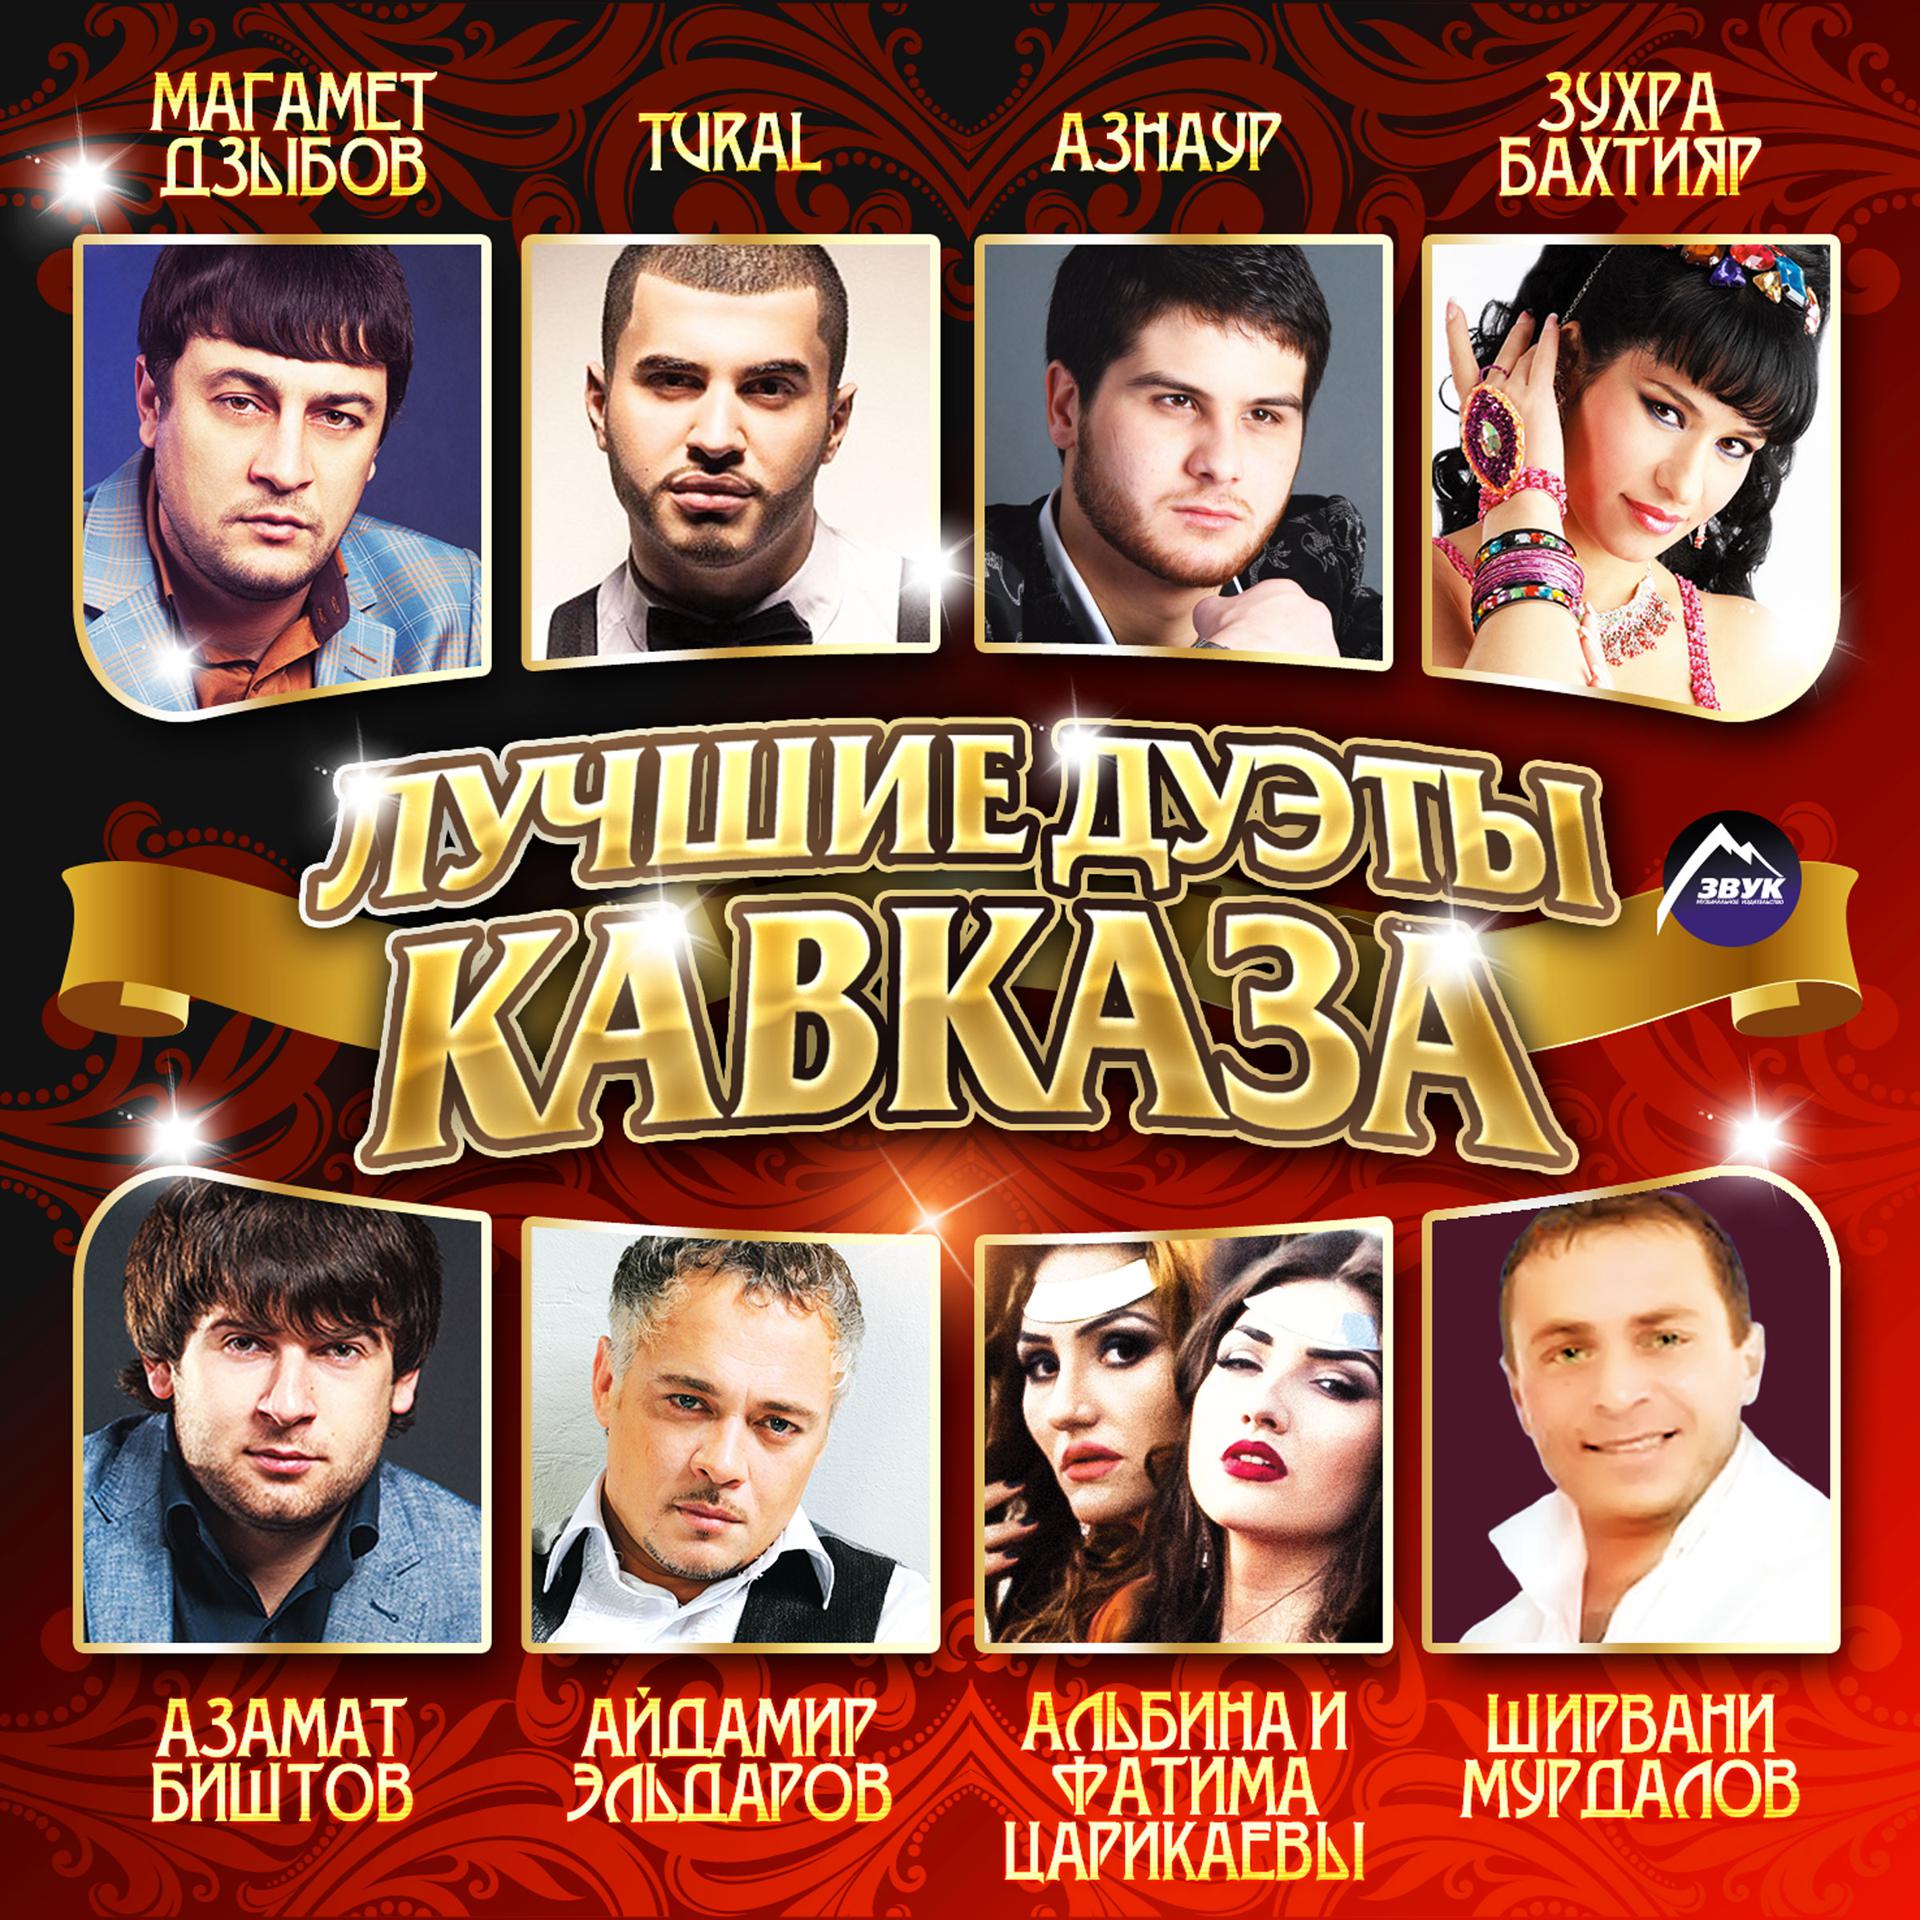 Популярная музыка кавказа